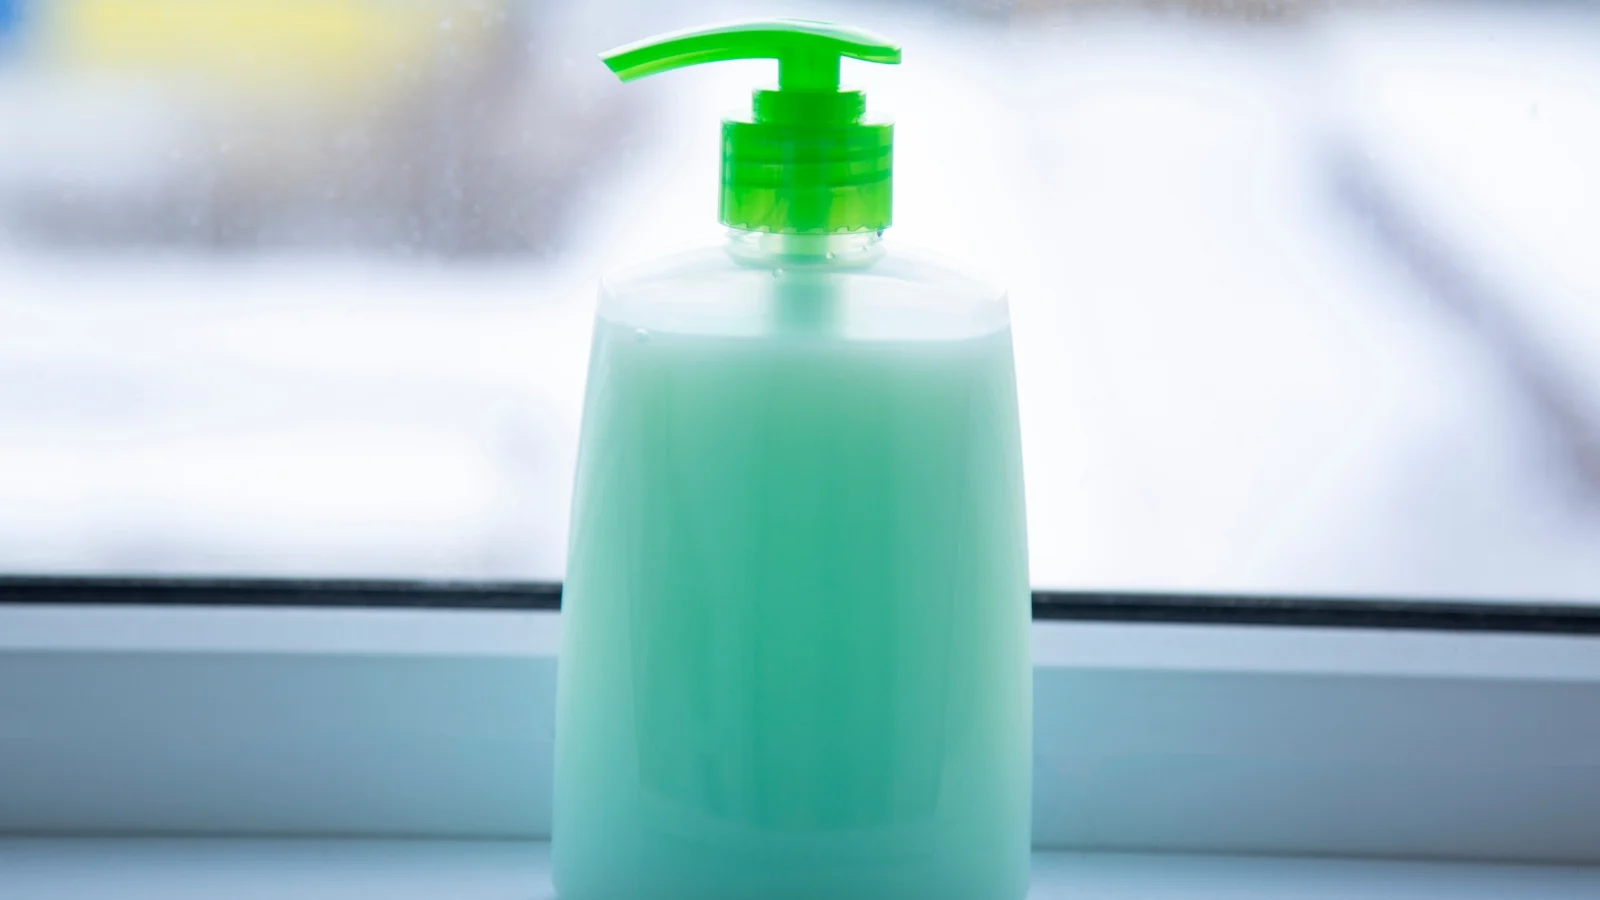 A bottle of green soap sitting on a window sill.